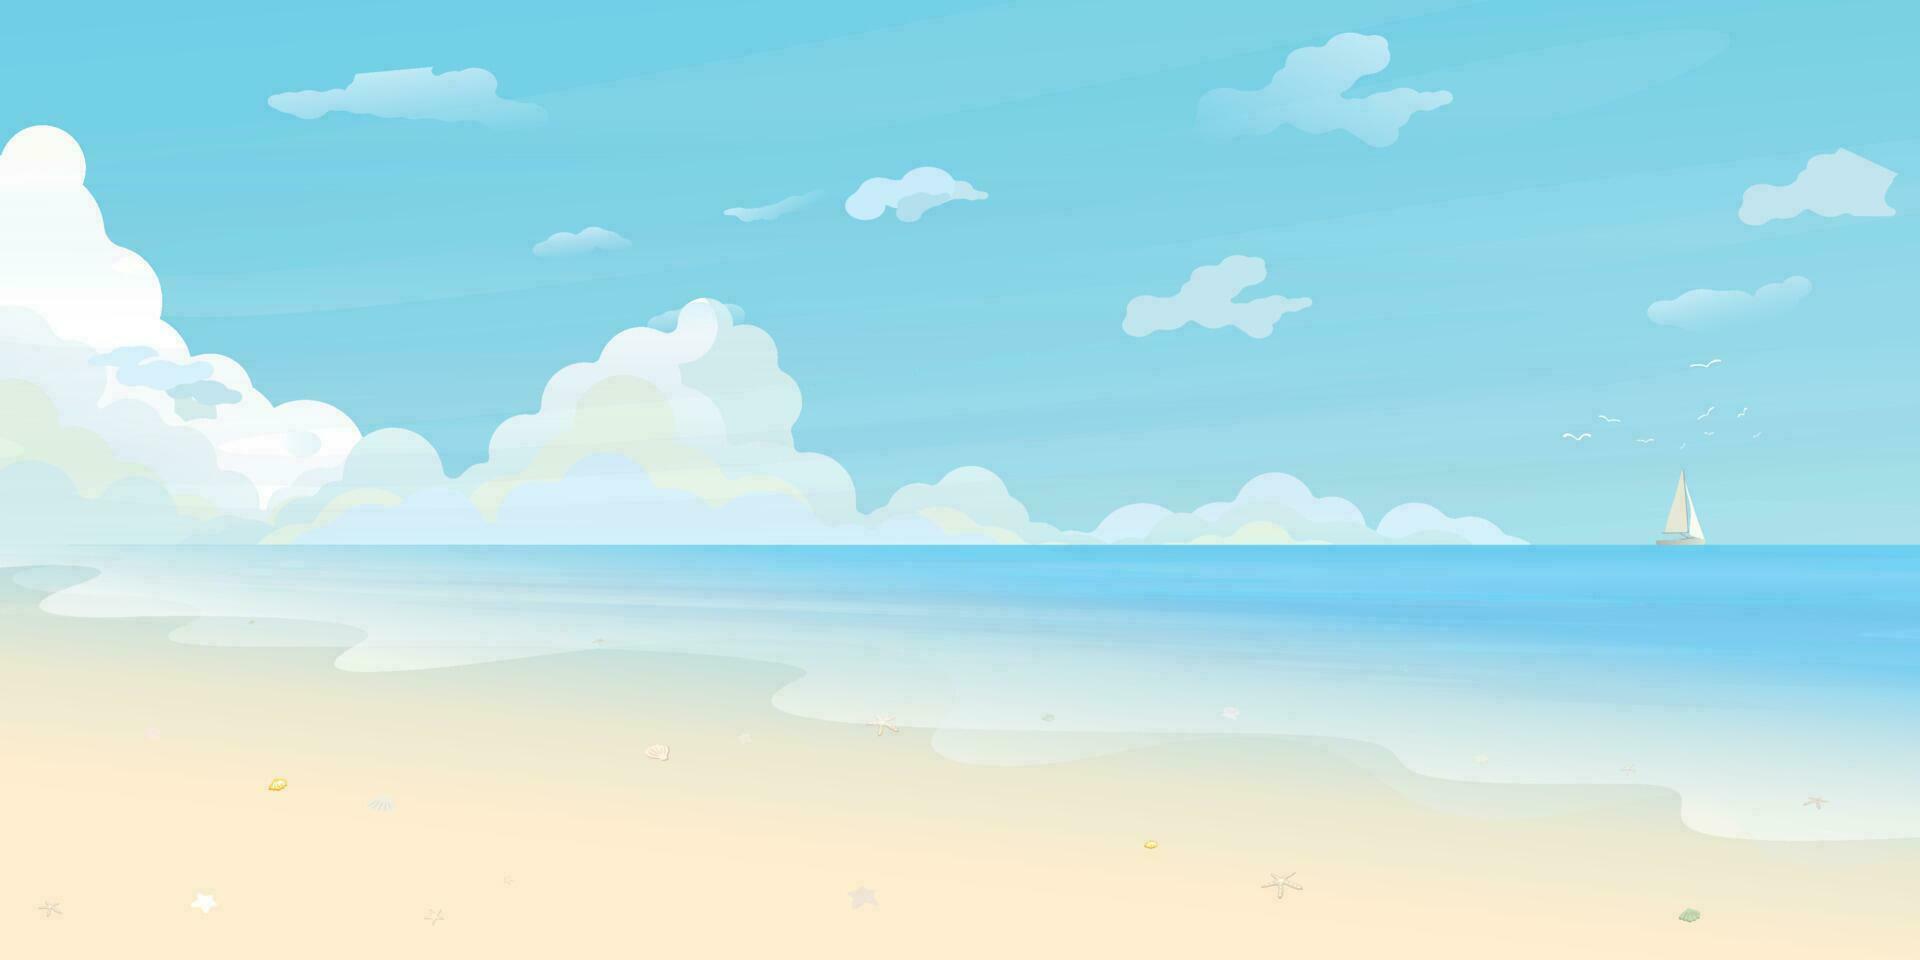 tropical paisaje de costa hermosa azul mar apuntalar playa con yate a horizonte vector ilustración.